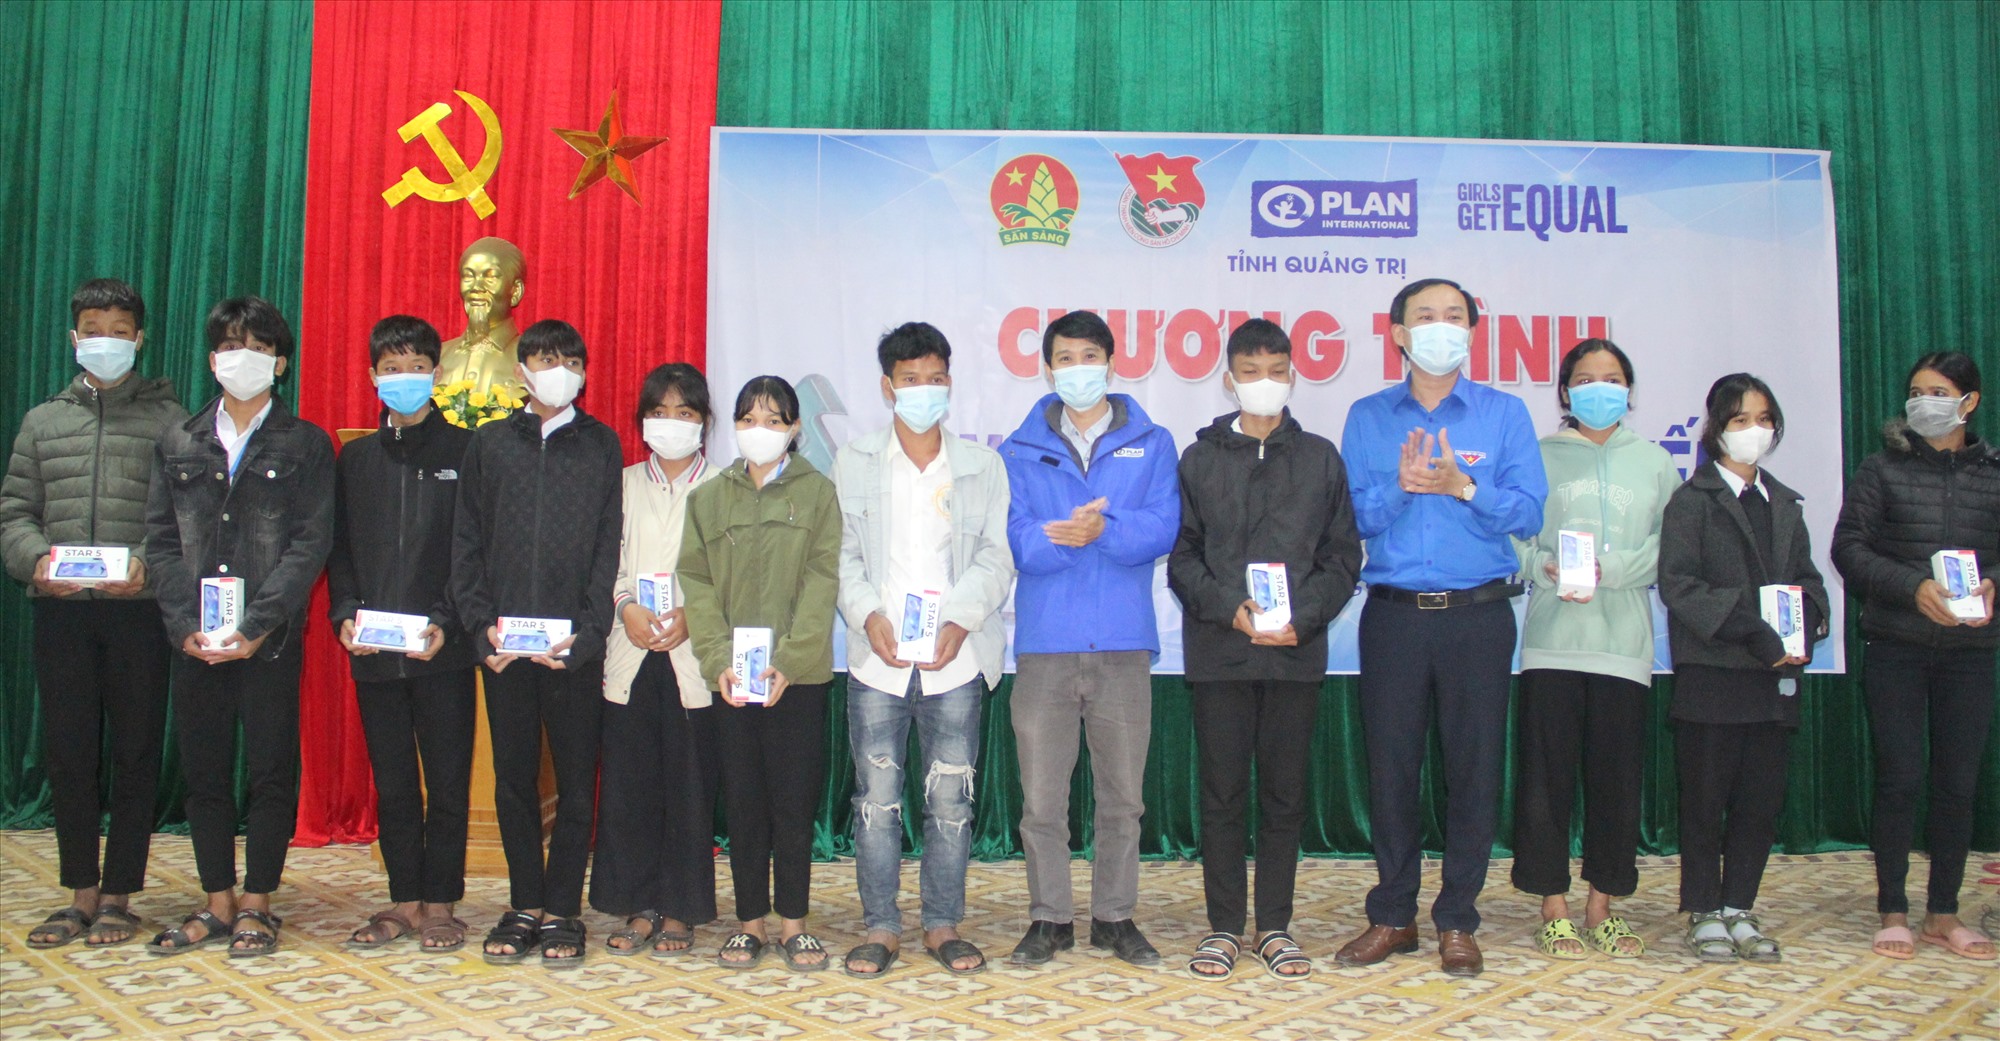 Ban tổ chức Chương trình “Cùng em học trực tuyến” trao tặng điện thoại thông minh cho học sinh trên địa bàn huyện Đakrông - Ảnh: HN